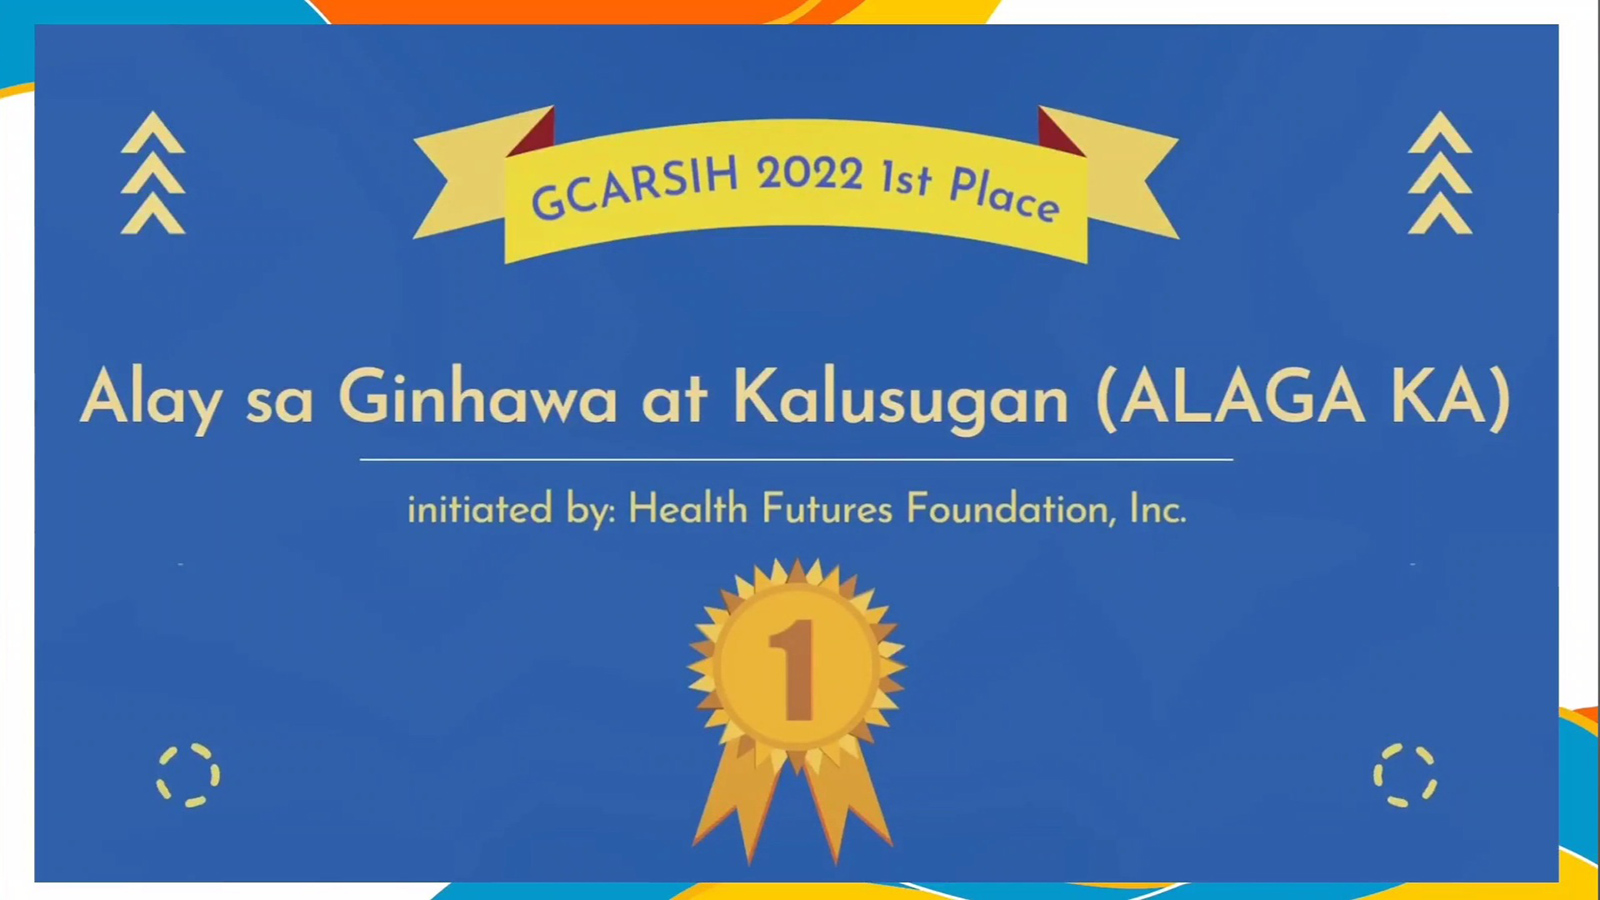 Alay sa Ginhawa at Kalusugan (ALAGA KA) initiated by Health Futures Foundation, Inc. wins First Place in GCARSIH 2022